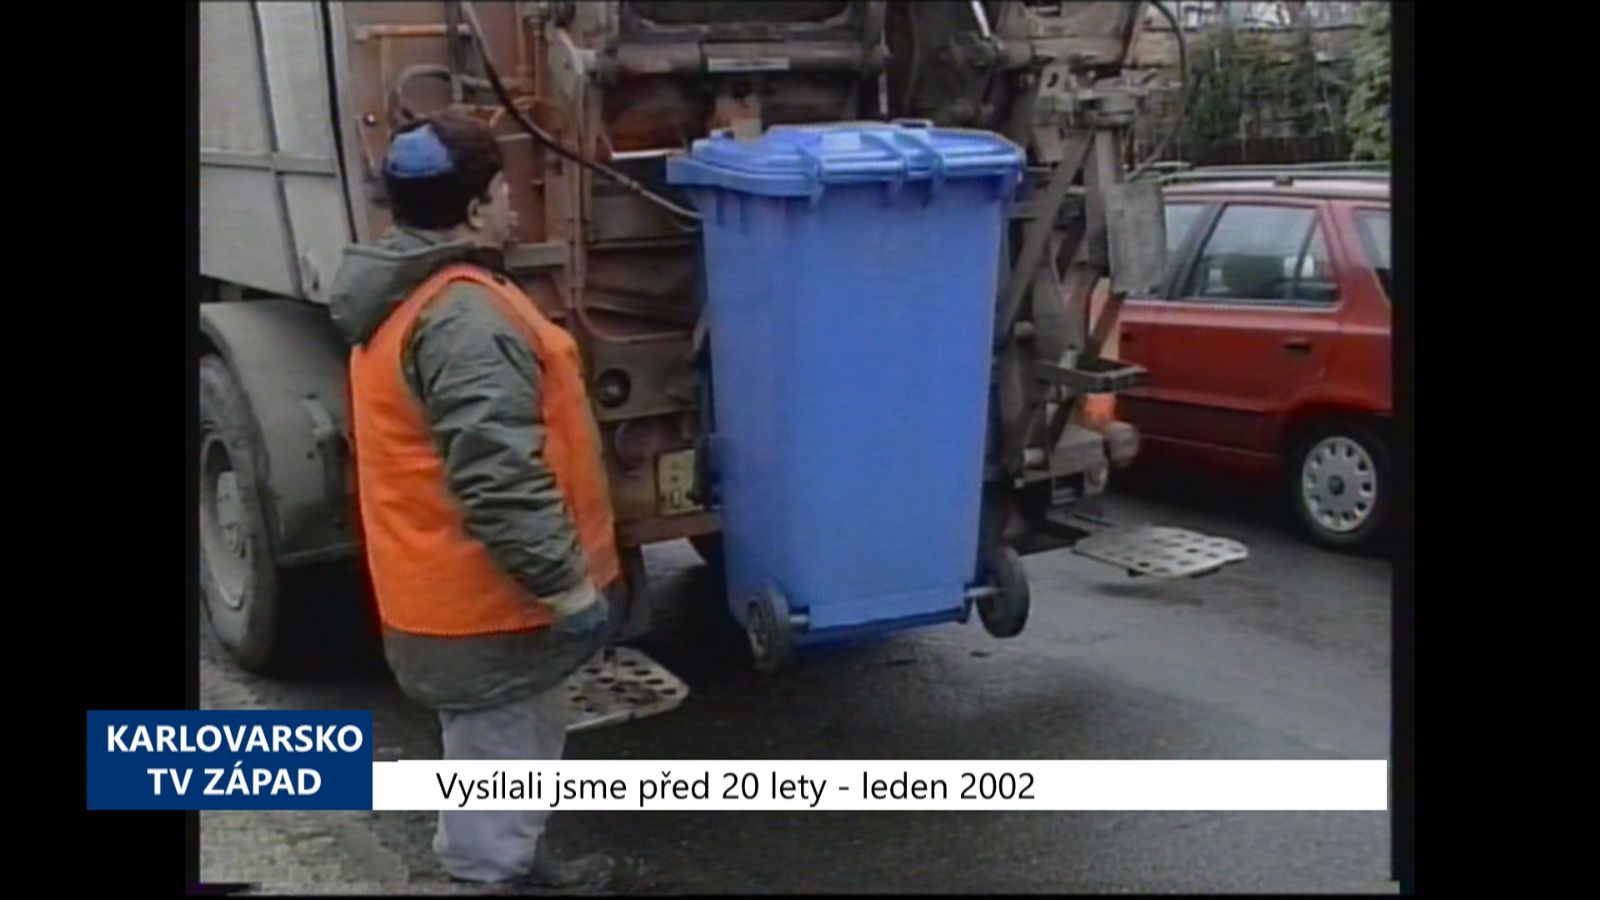 2002 – Cheb: Odpady se budou platit na obyvatele (TV Západ)